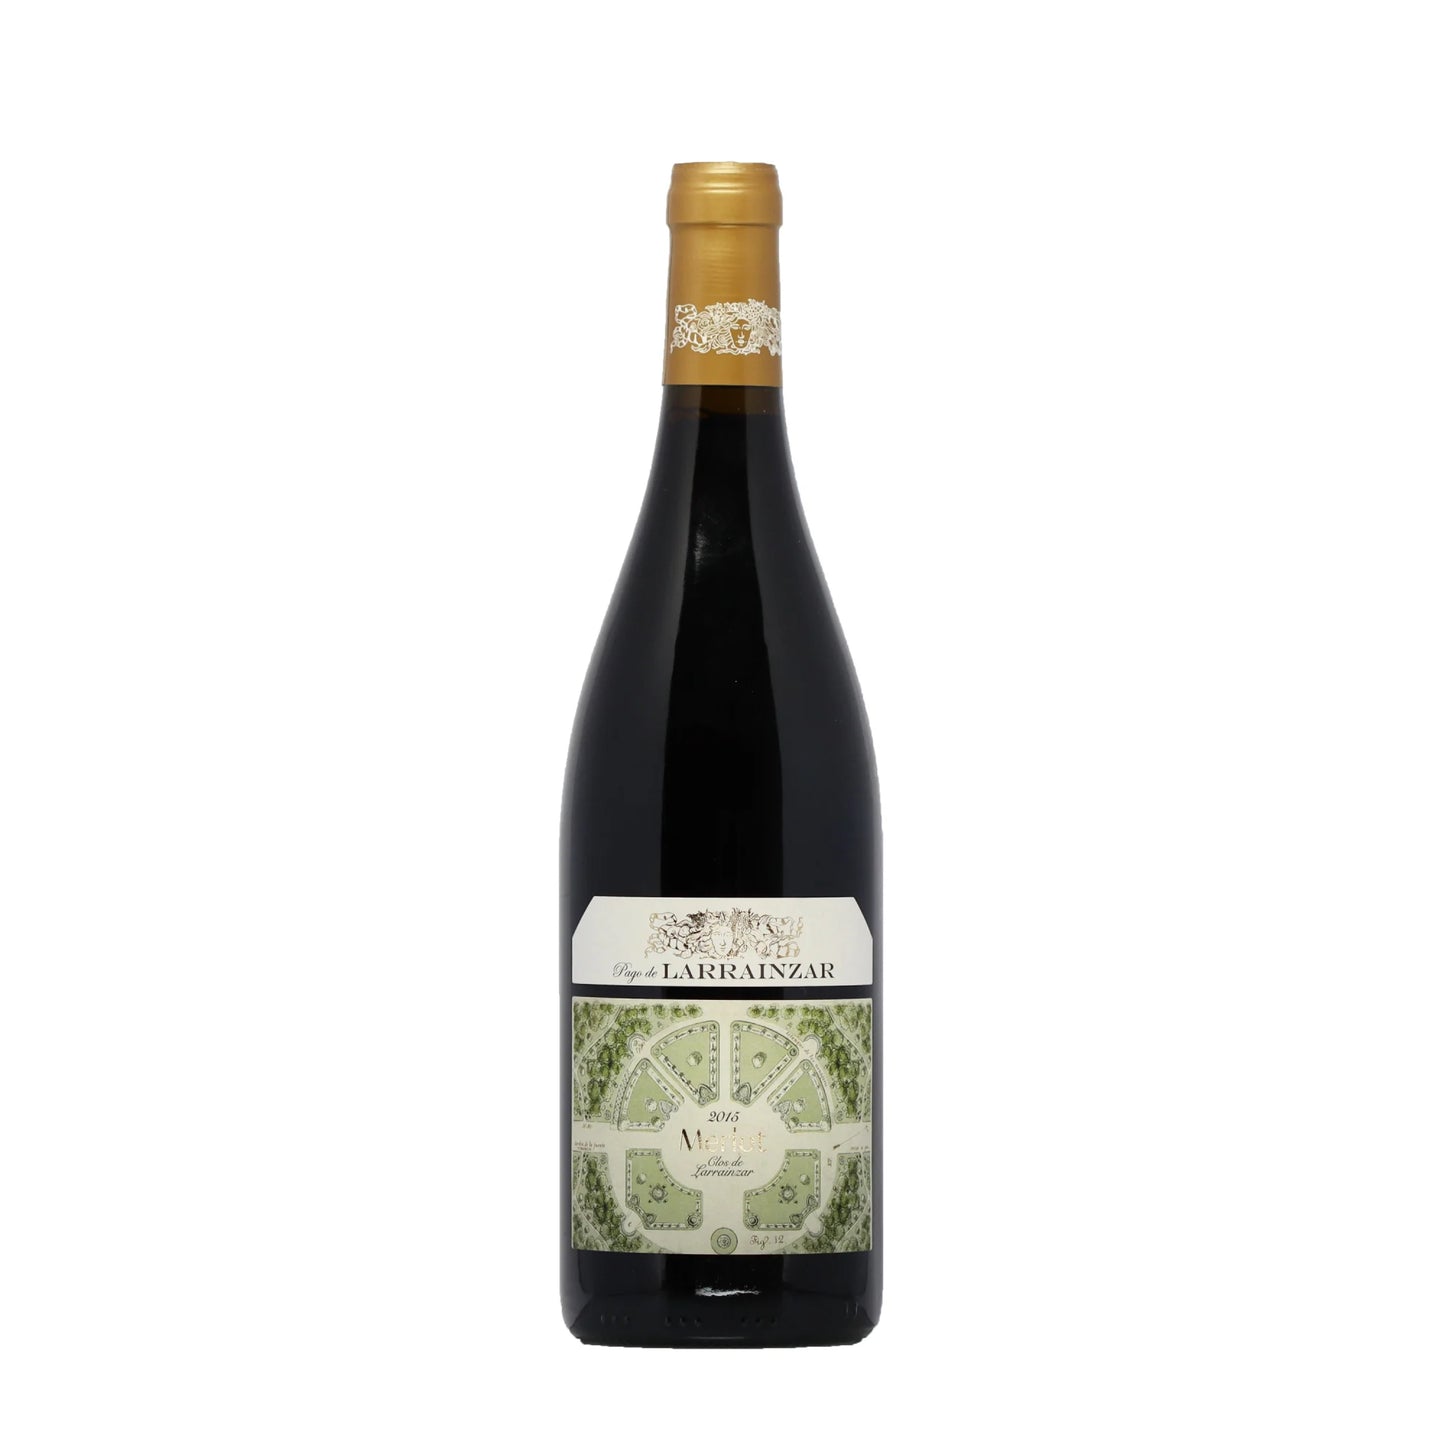 Merlot 2015 - Limitierte Edition Pago de Larrainzar Rotwein - Spanien - Wein